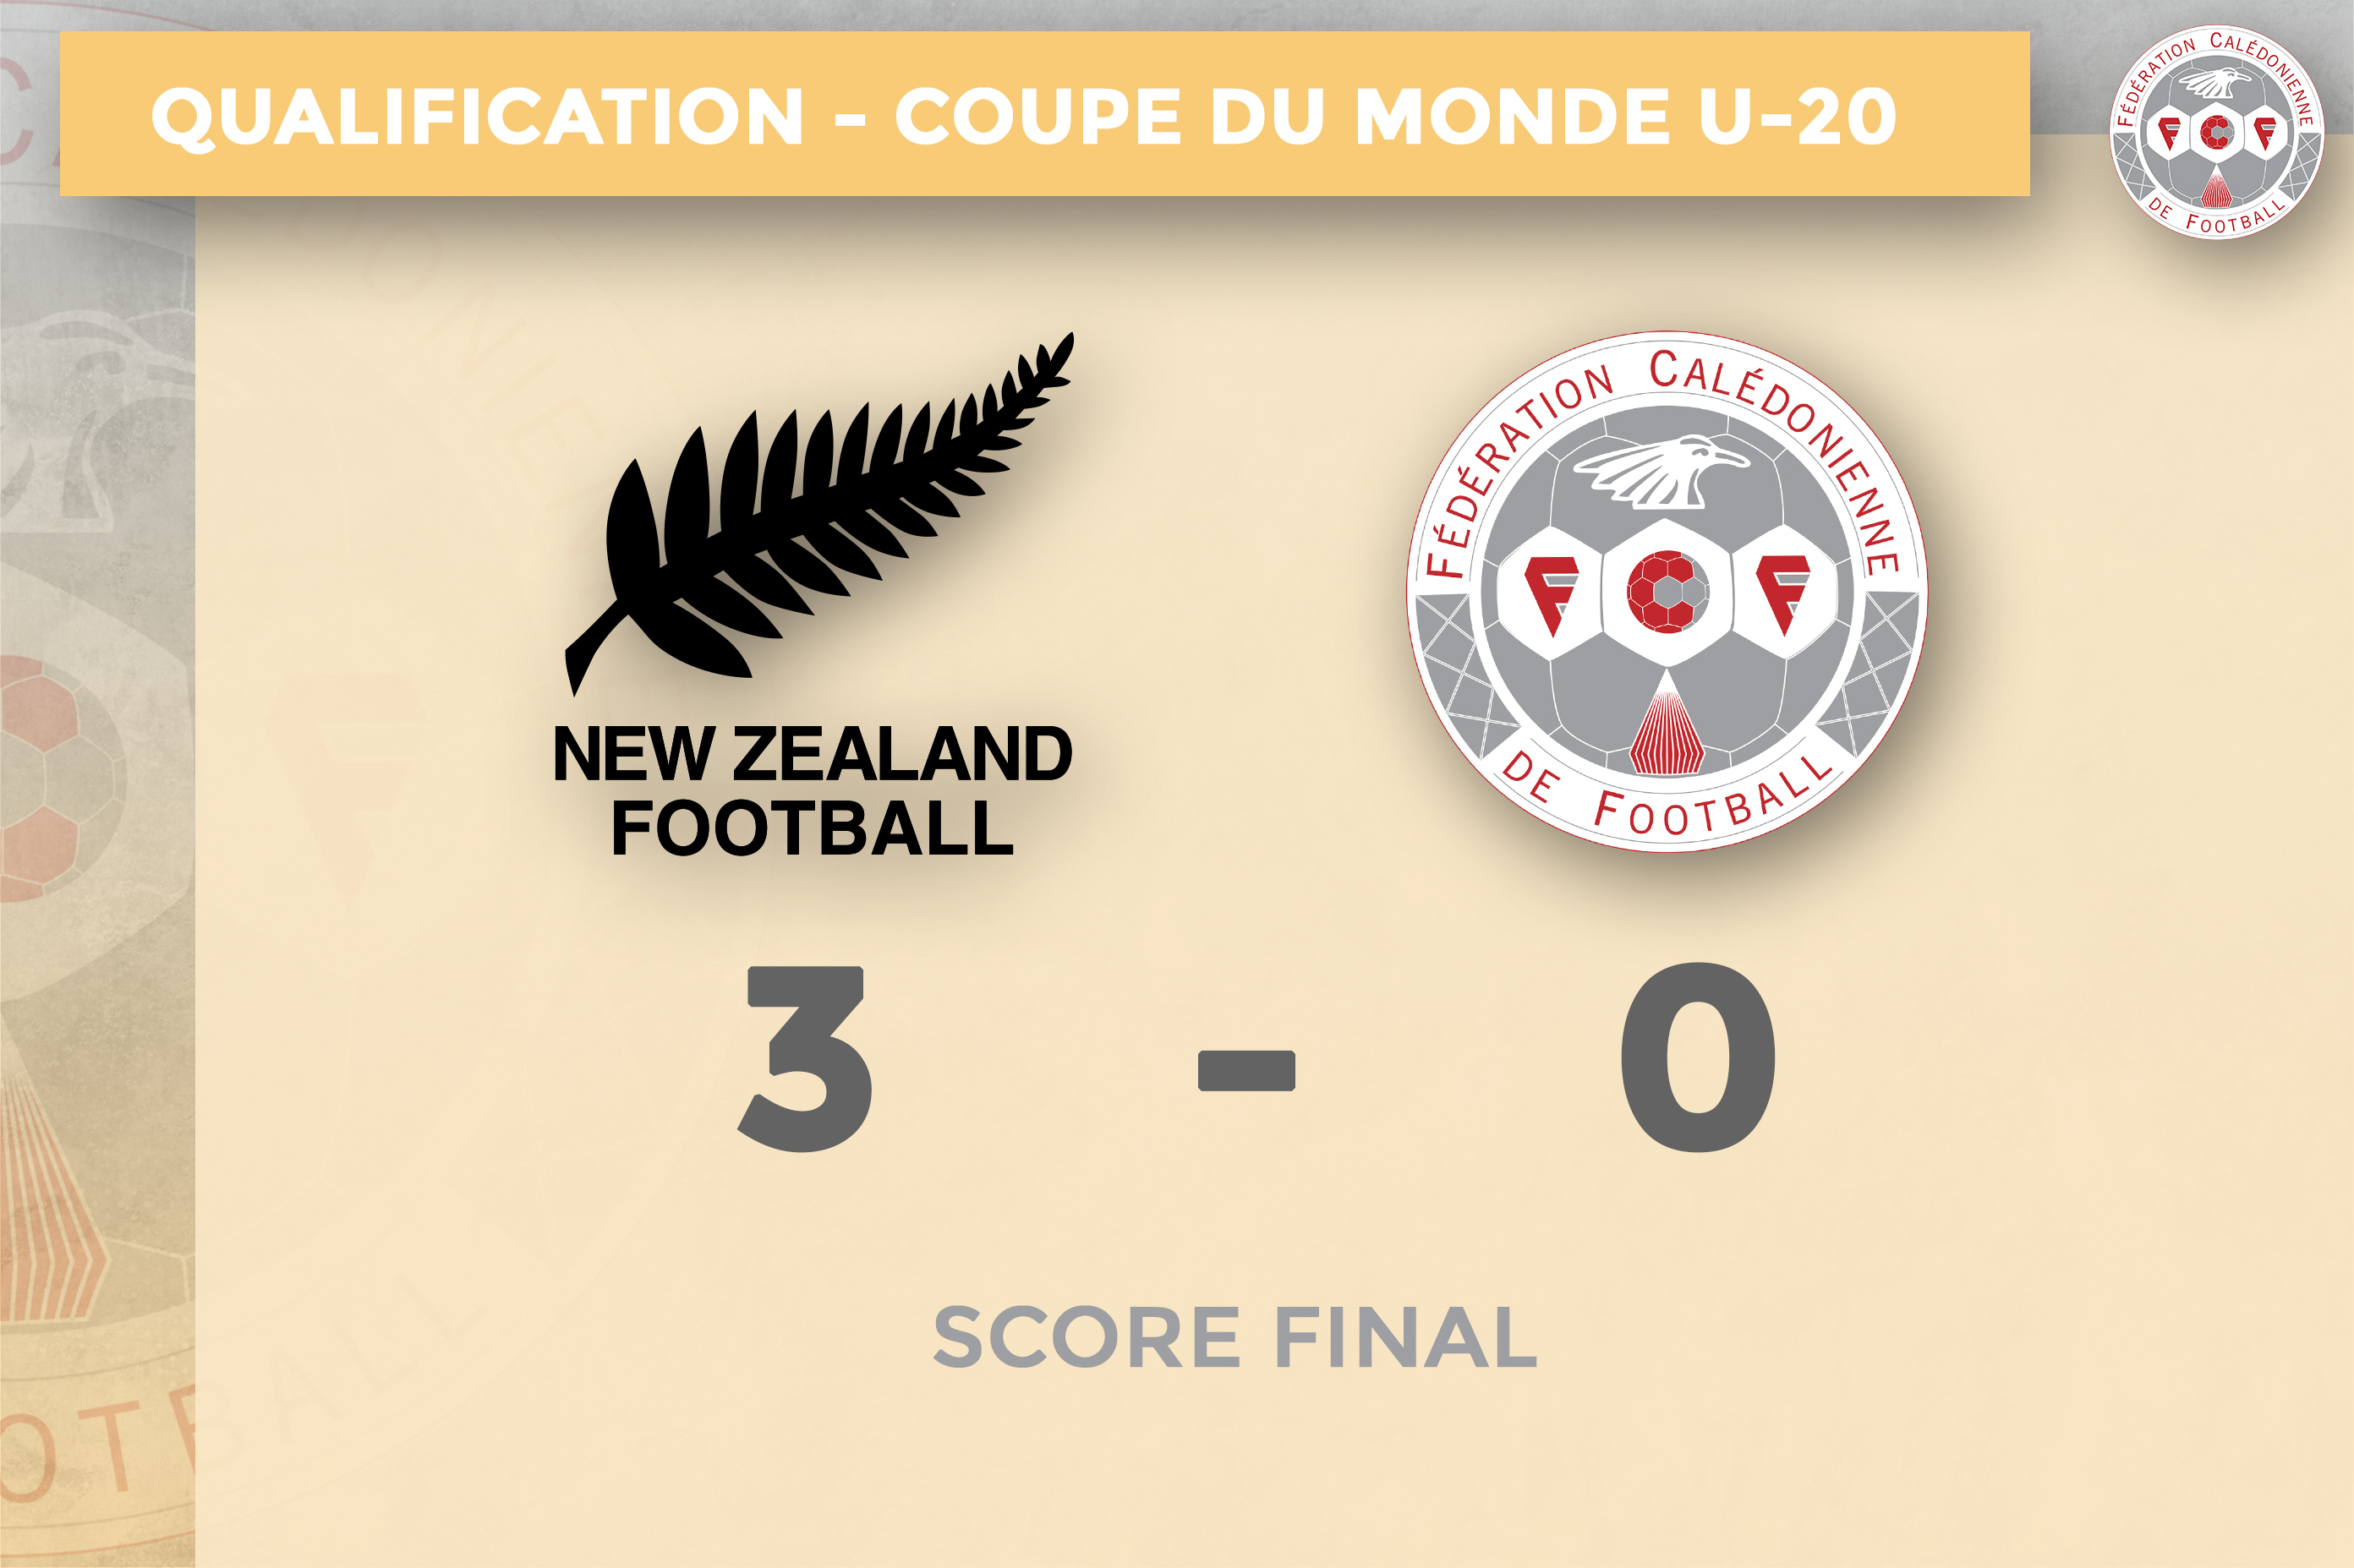 Nouvelle-Zélande 3 - 0 NOUVELLE-CALEDONIE (U19) | Les calédoniens défaits en entame de compétition